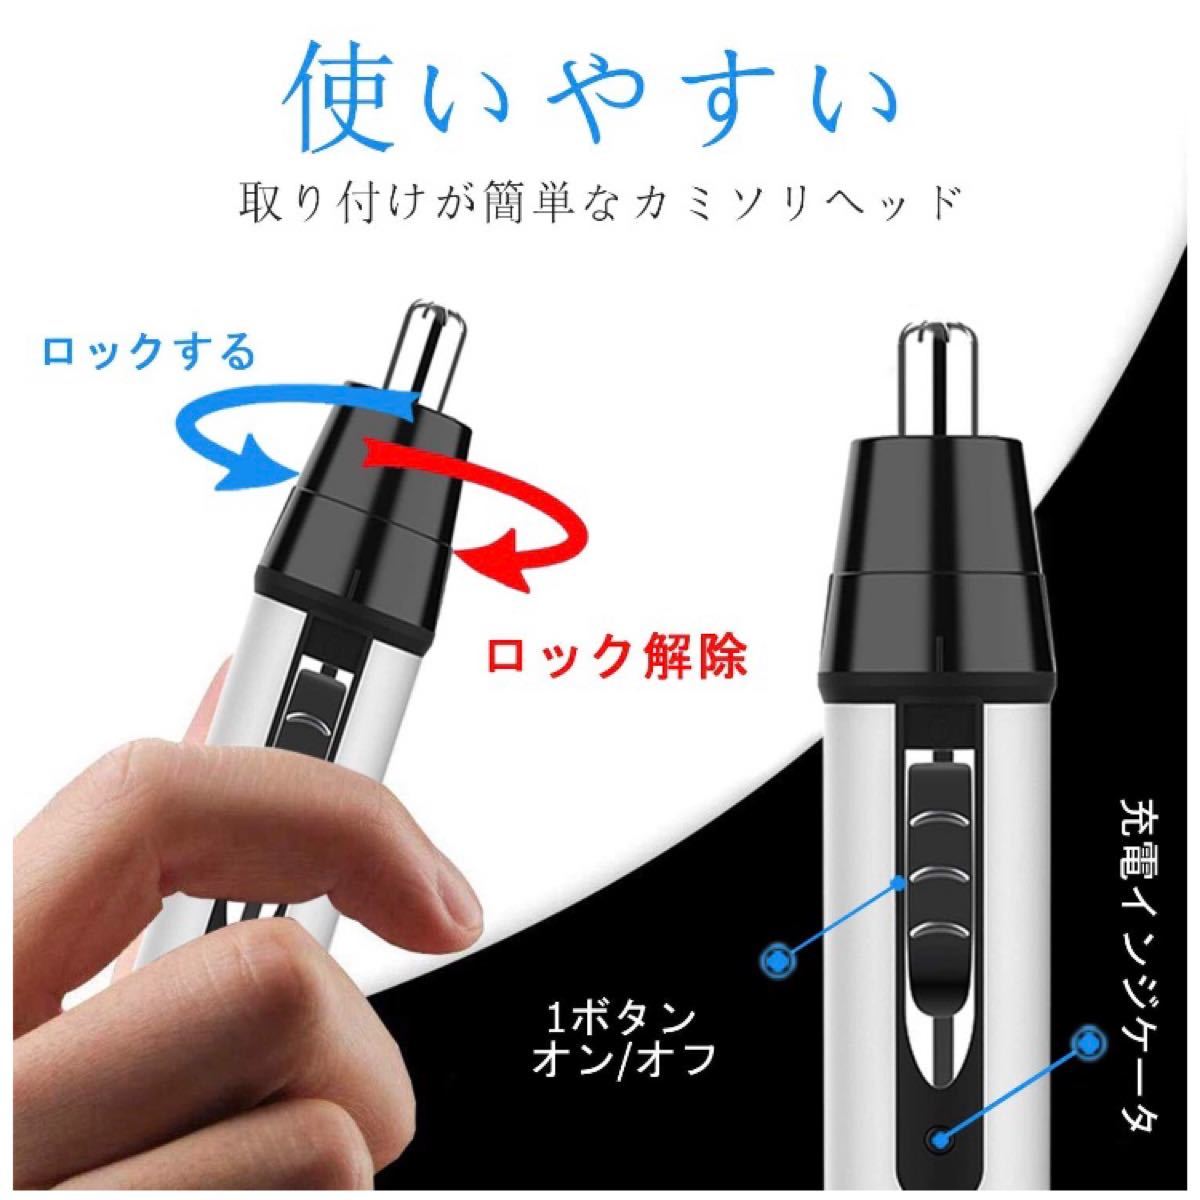 【新品】 電気シェーバー メンズシェーバー 鼻毛カッター USB充電 ひげそり